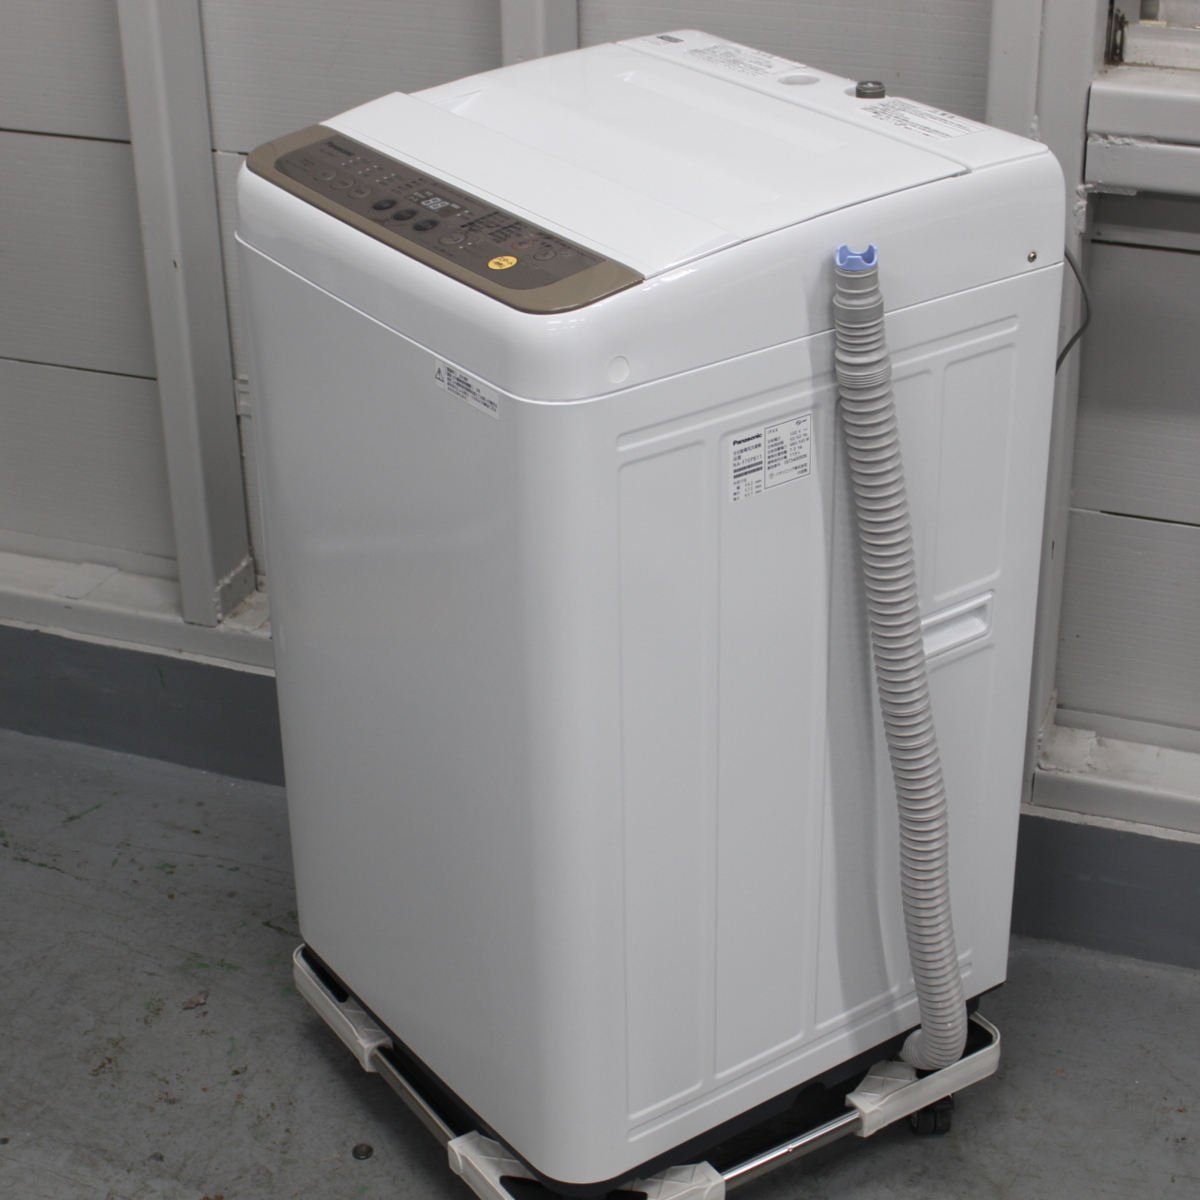 パナソニック 全自動洗濯機 洗濯機 NA-F70PB11 Panasonic 2018年製 7kg 7.0kg